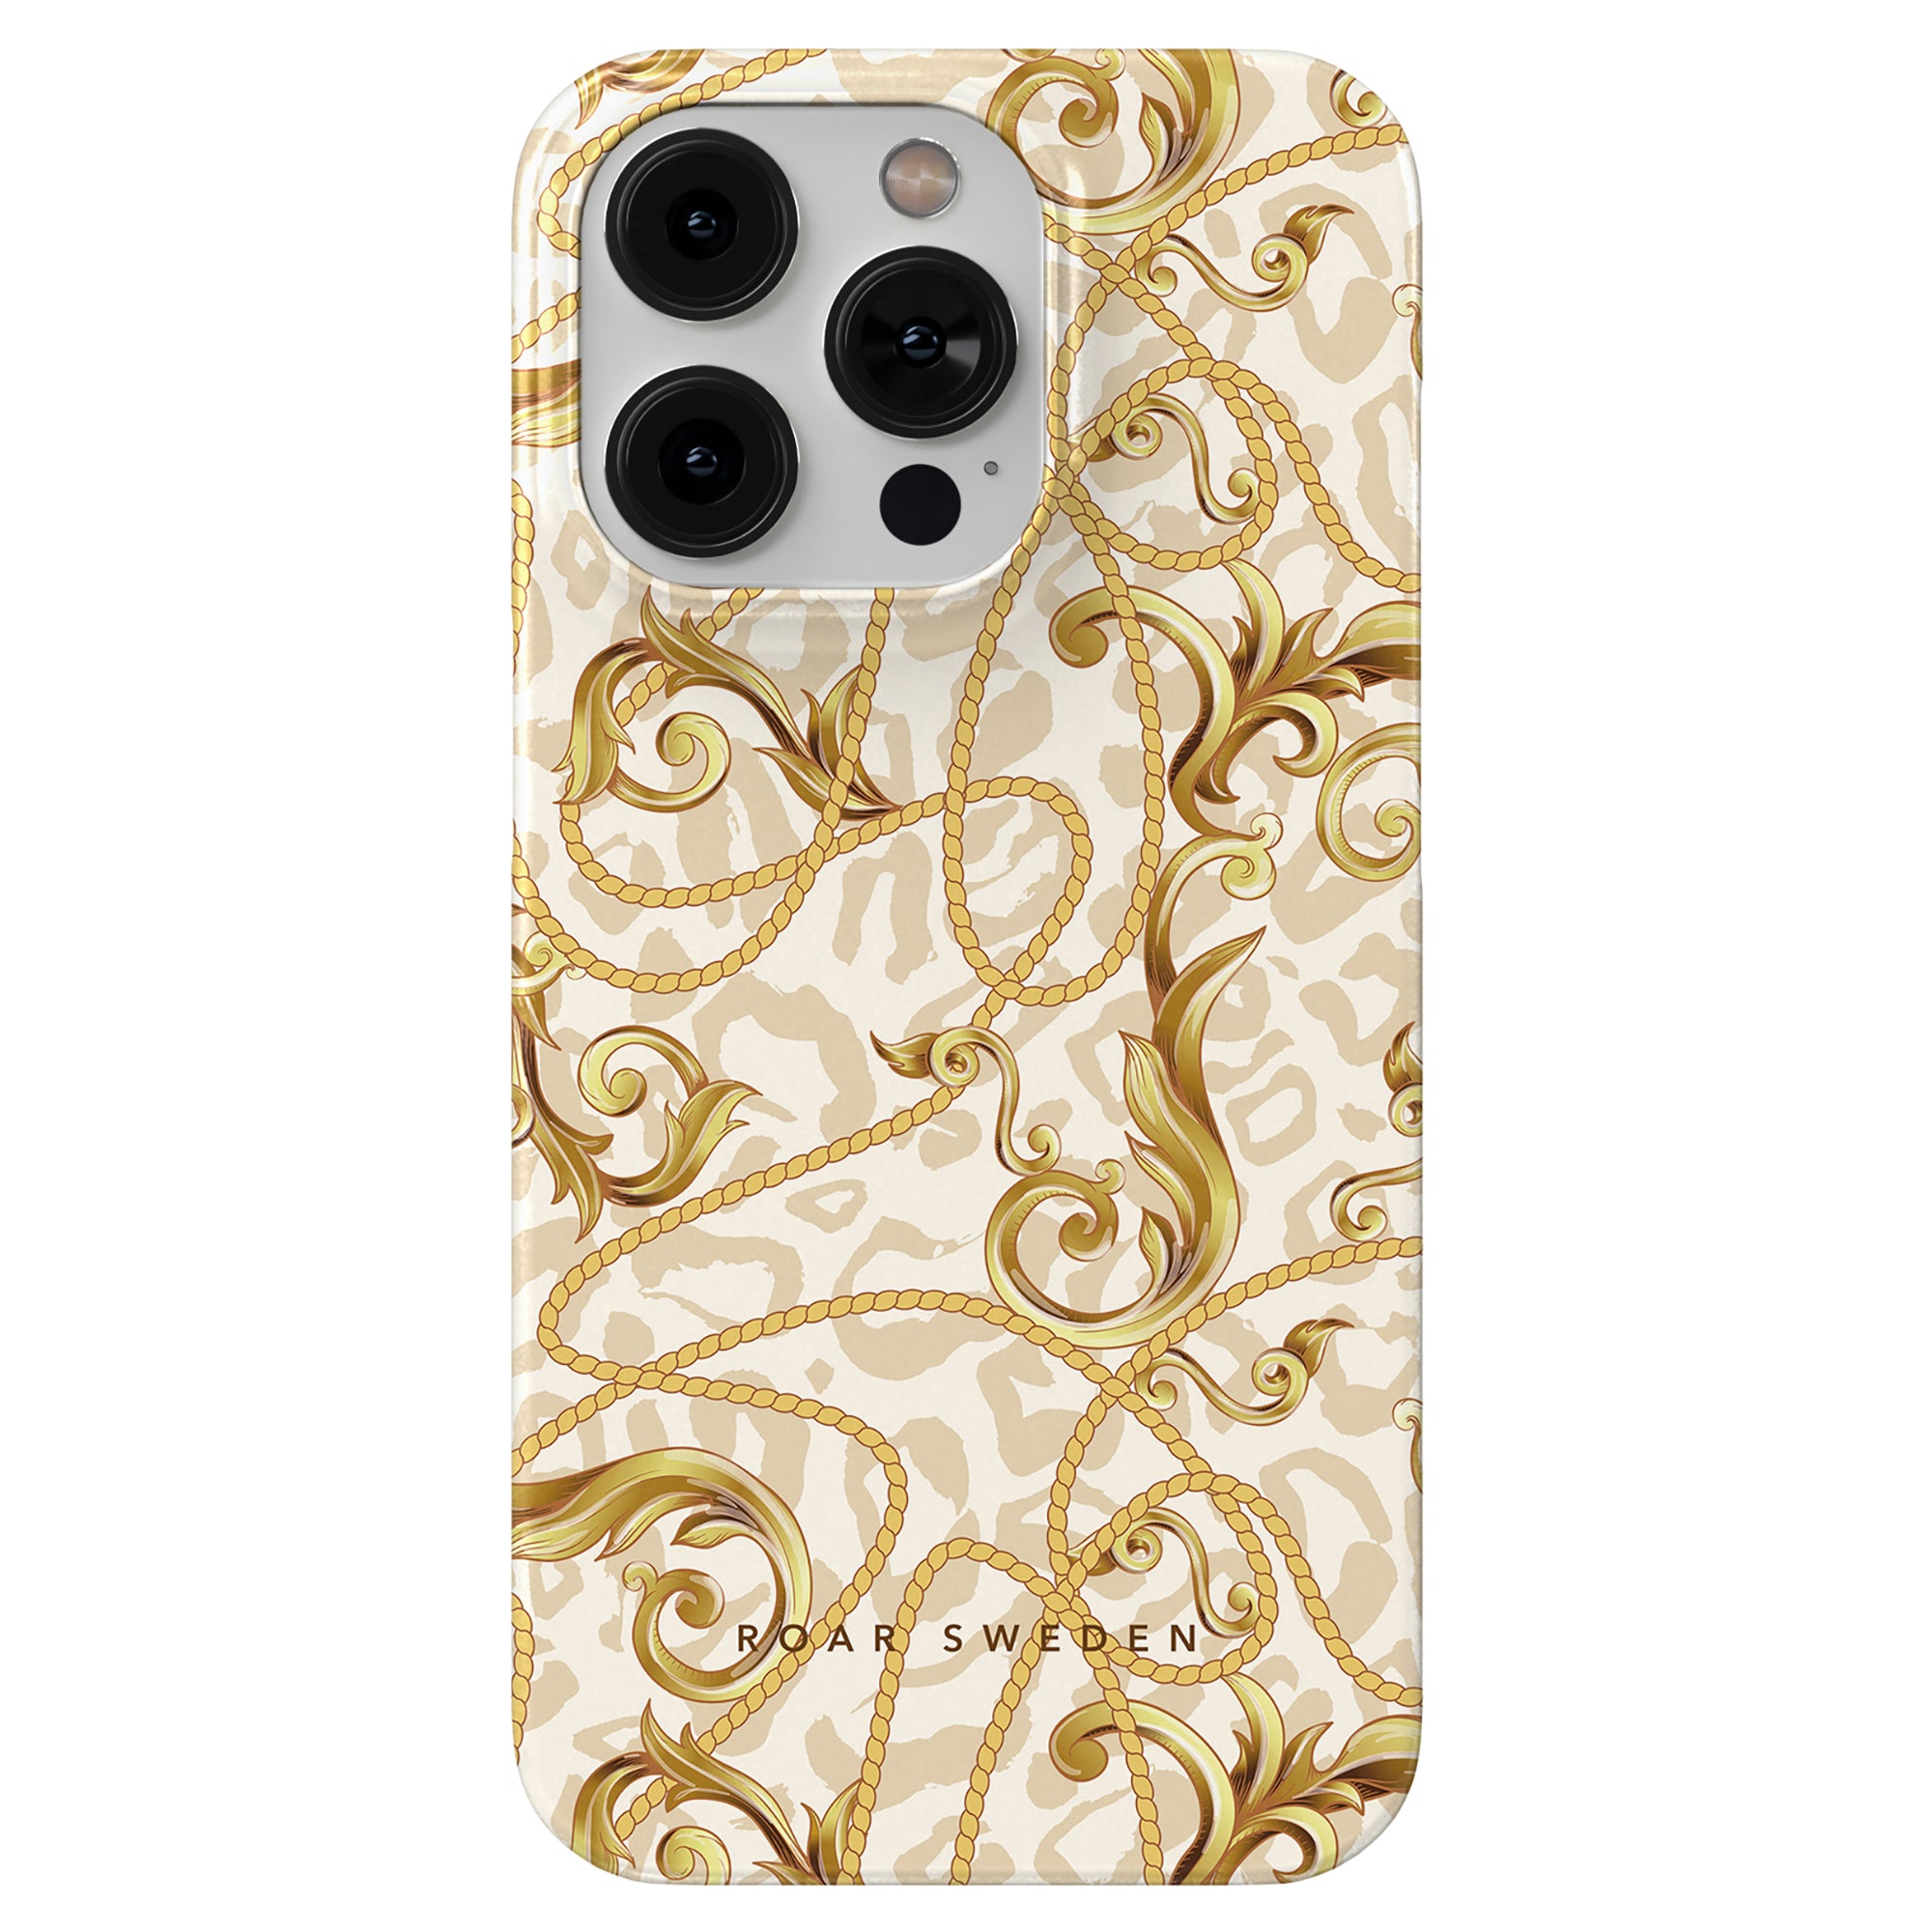 A Rococo - Slim case - ett telefonfodral i vitt och guld med ett utsmyckat mönster i barockt rik och dekorativ konststil.